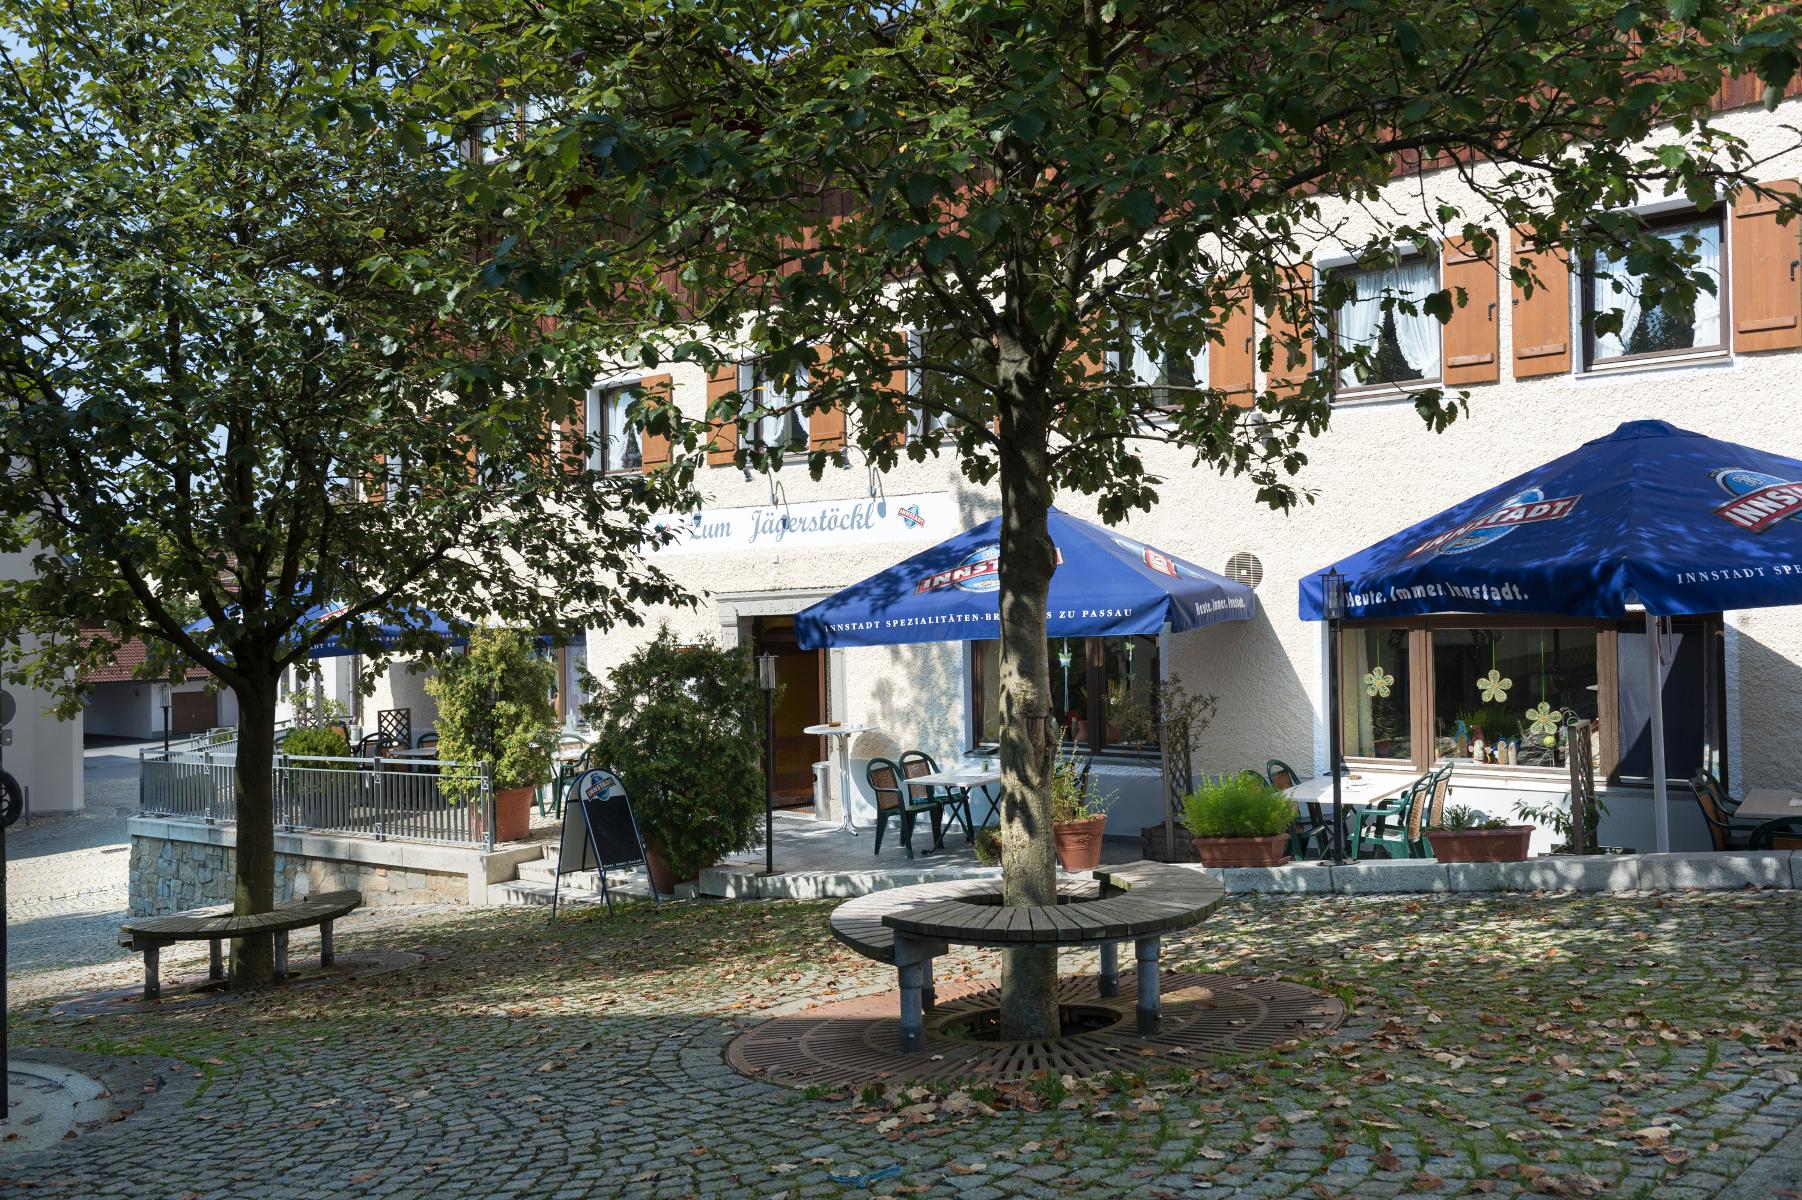 Landhotel Zum Jägerstöckl in Grafenau